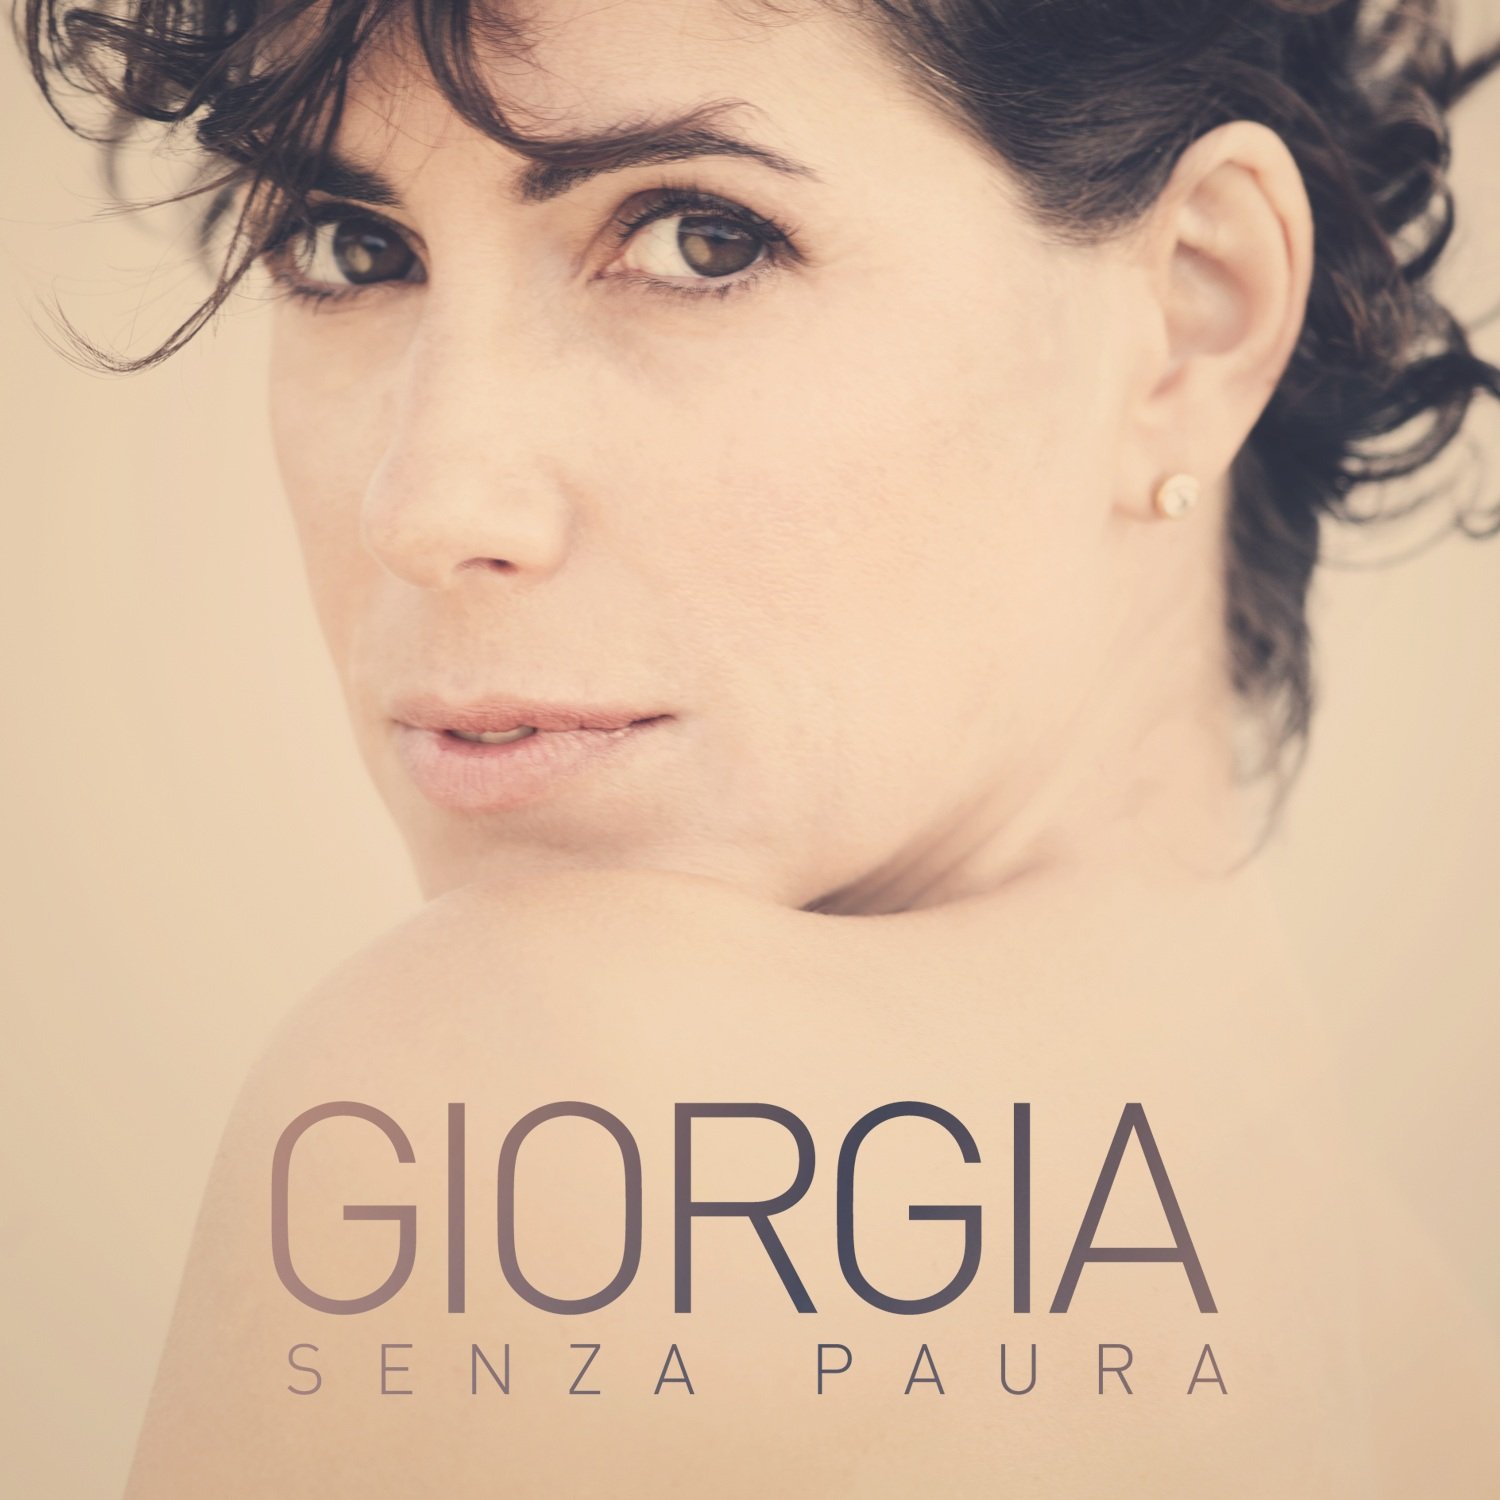 Giorgia Senza paura cover artwork